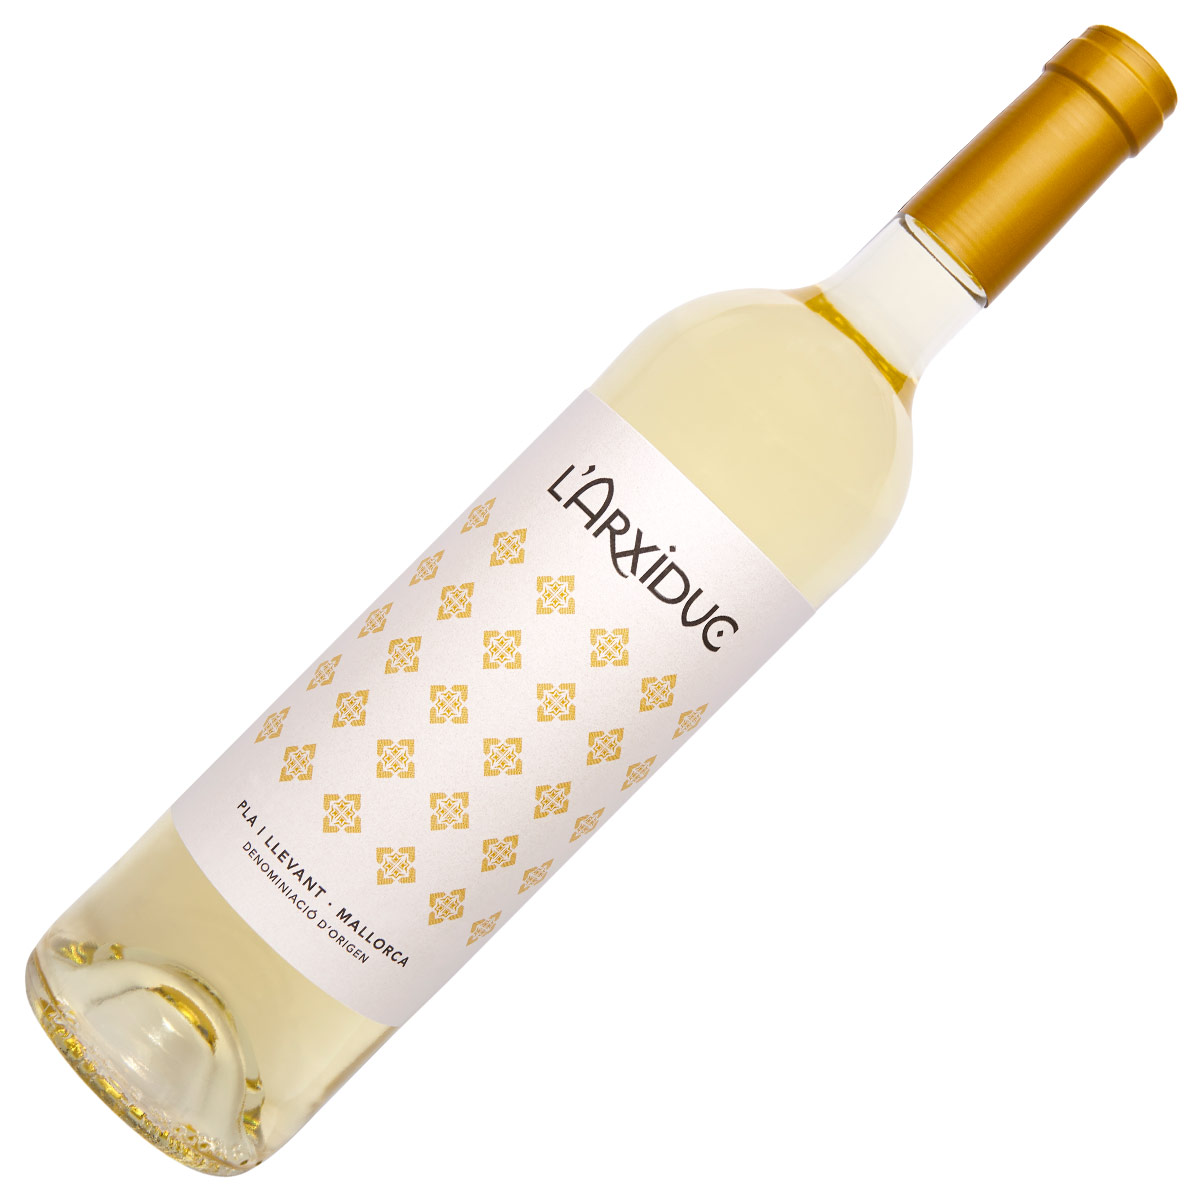 Pere Seda L´Arxiduc vin blanc D.O. Pla i Llevant